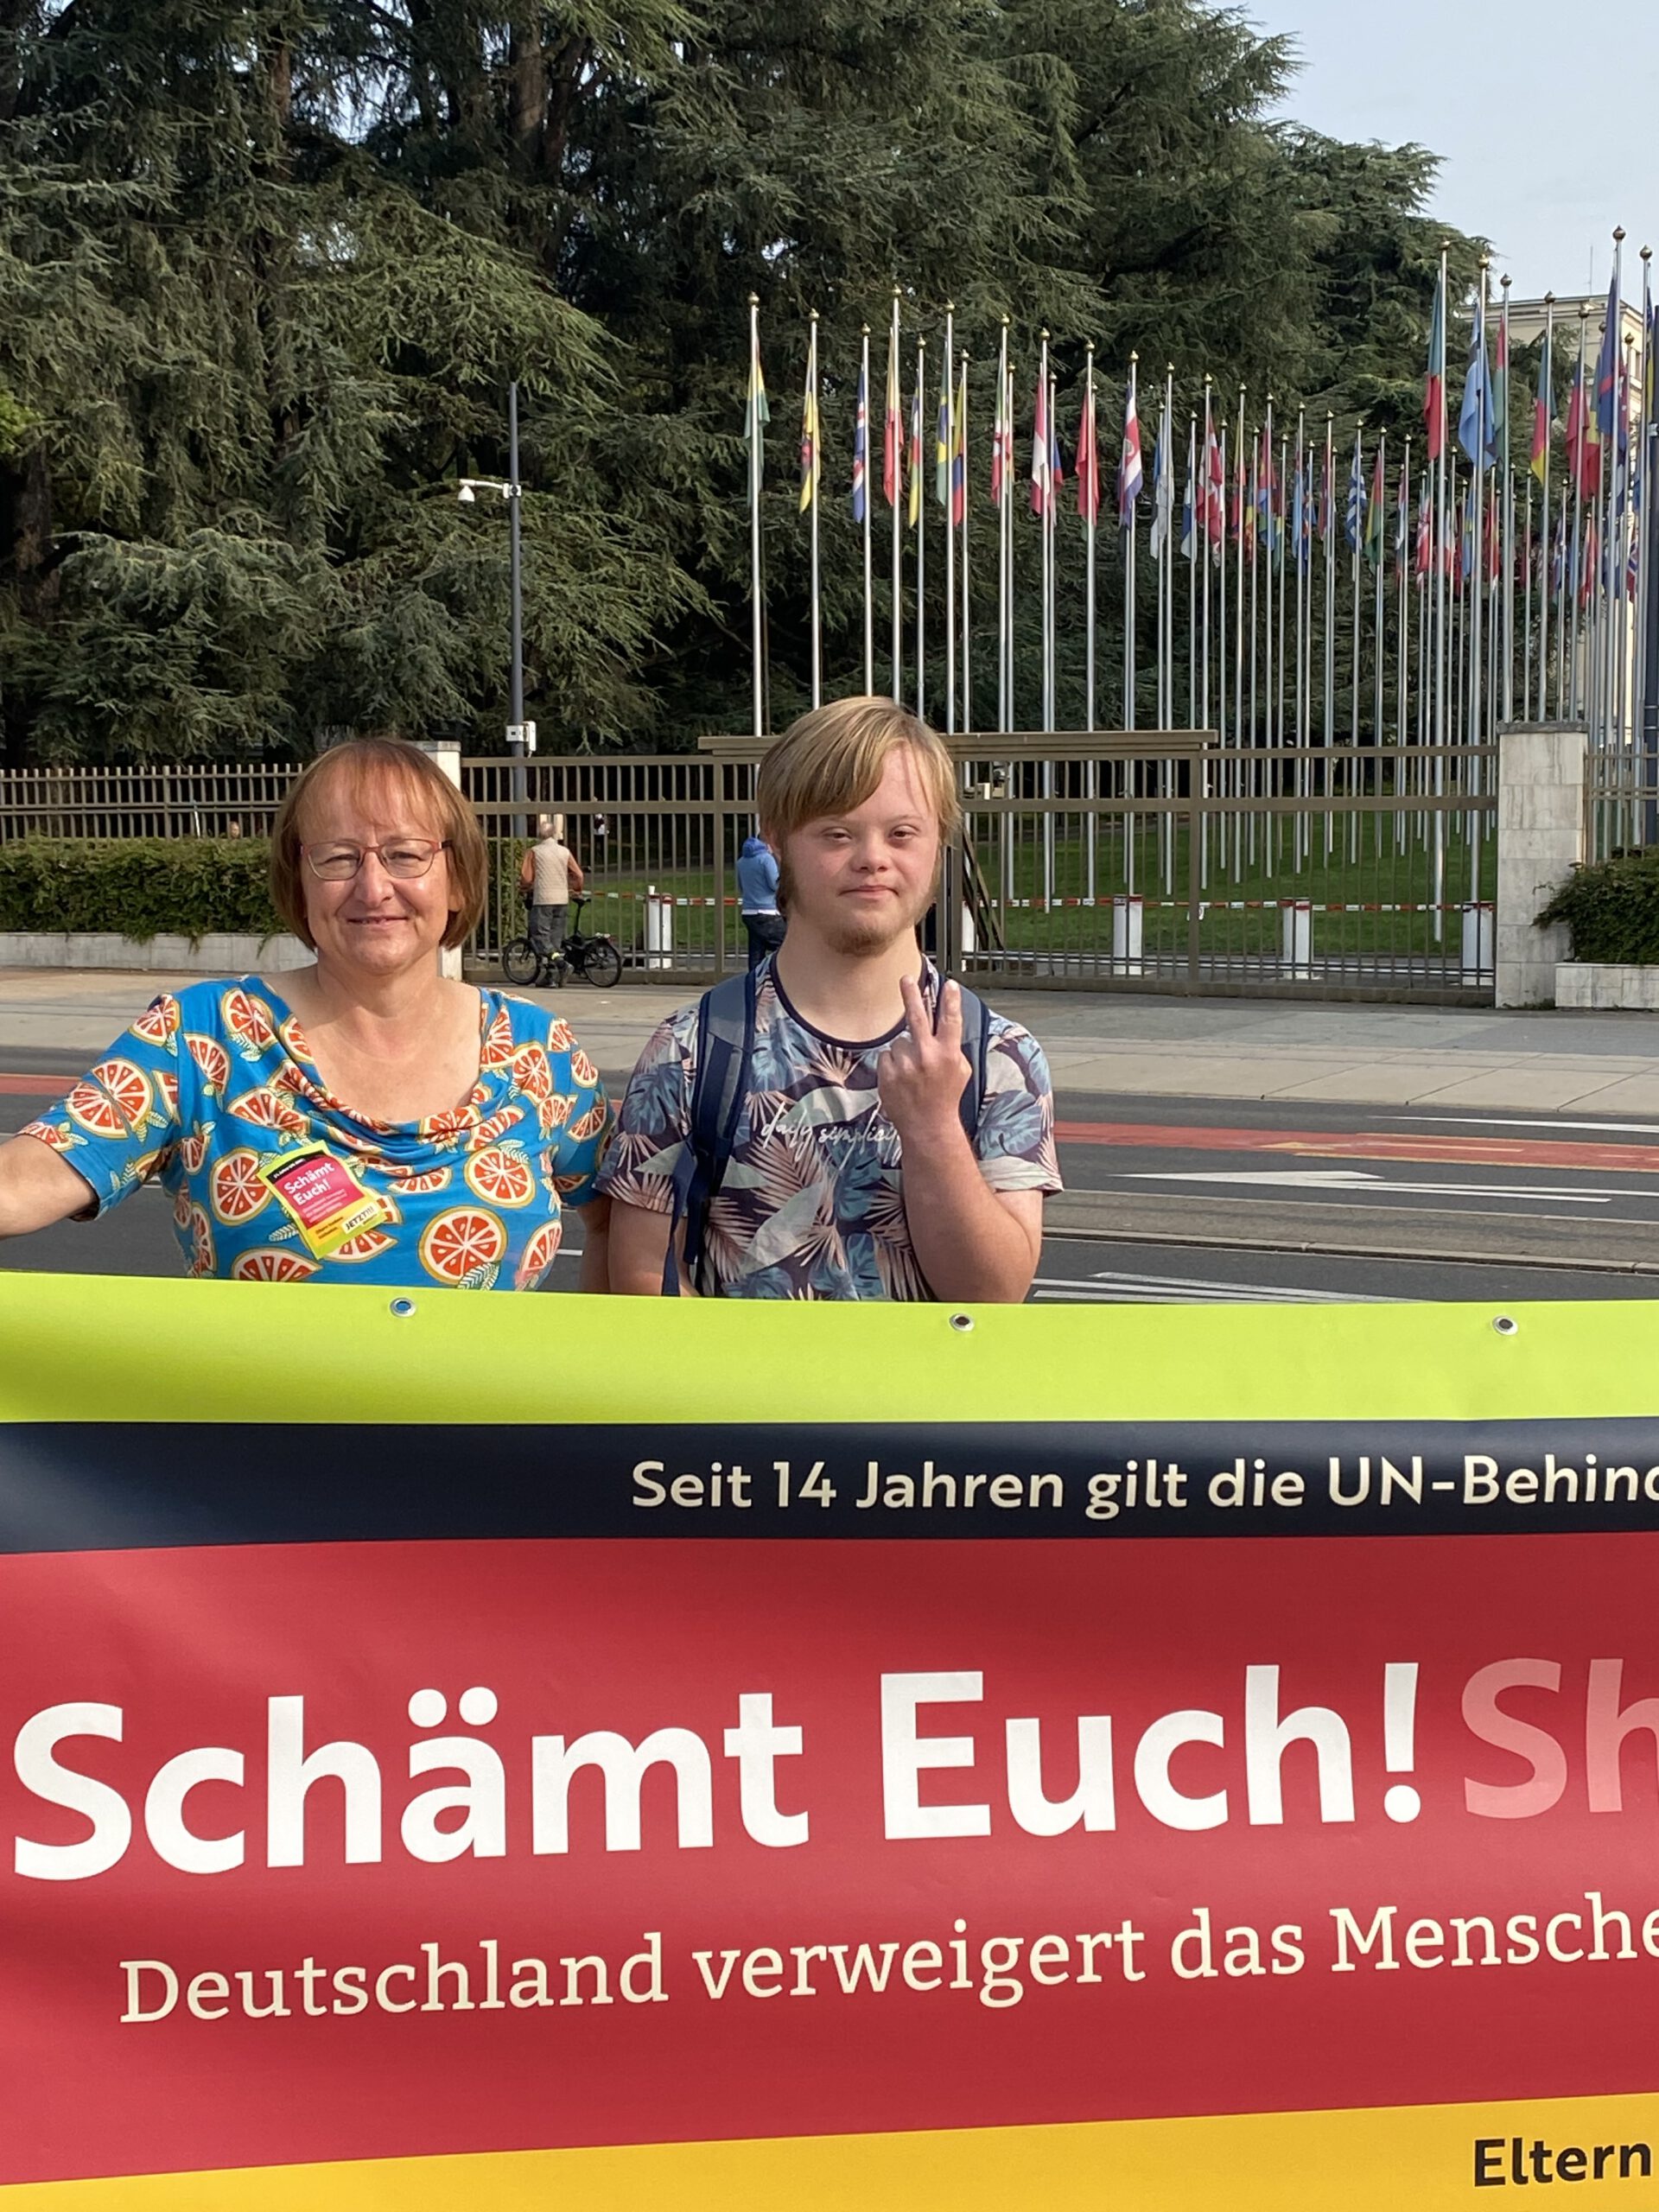 Auf dem Bild sieht man einen jungen Mann und mich hinter unserem Protest-Banner "Schämt Euch". Im Hintergrund erkennt man Teile der Fahnenallee vor dem Uno-Hauptsitz in Genf.